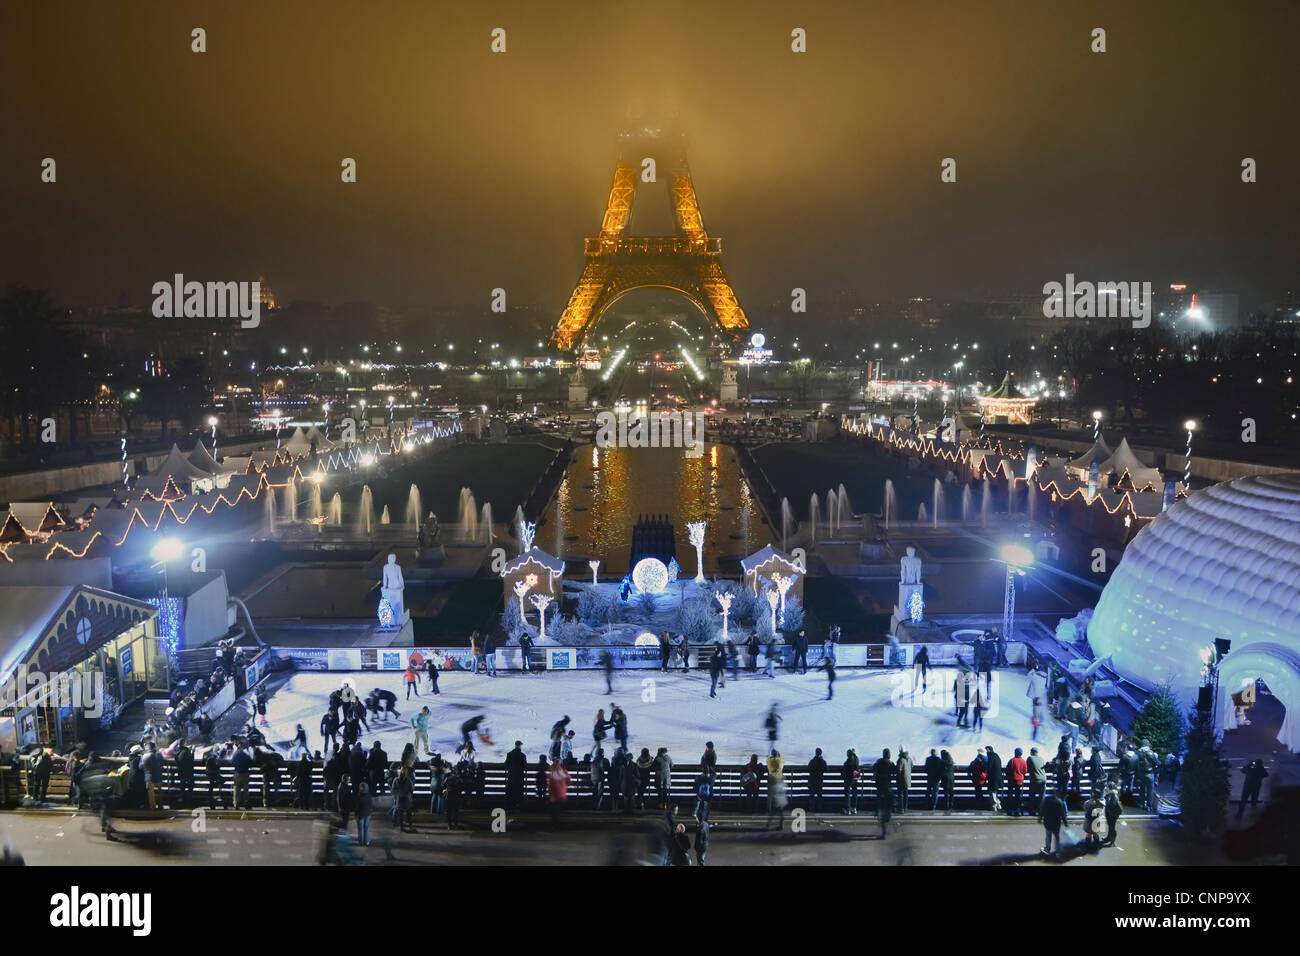 Paris zu Weihnachten. Menschen Eislaufen in der Nacht vor dem Eiffelturm in Paris Frankreich. Stockfoto